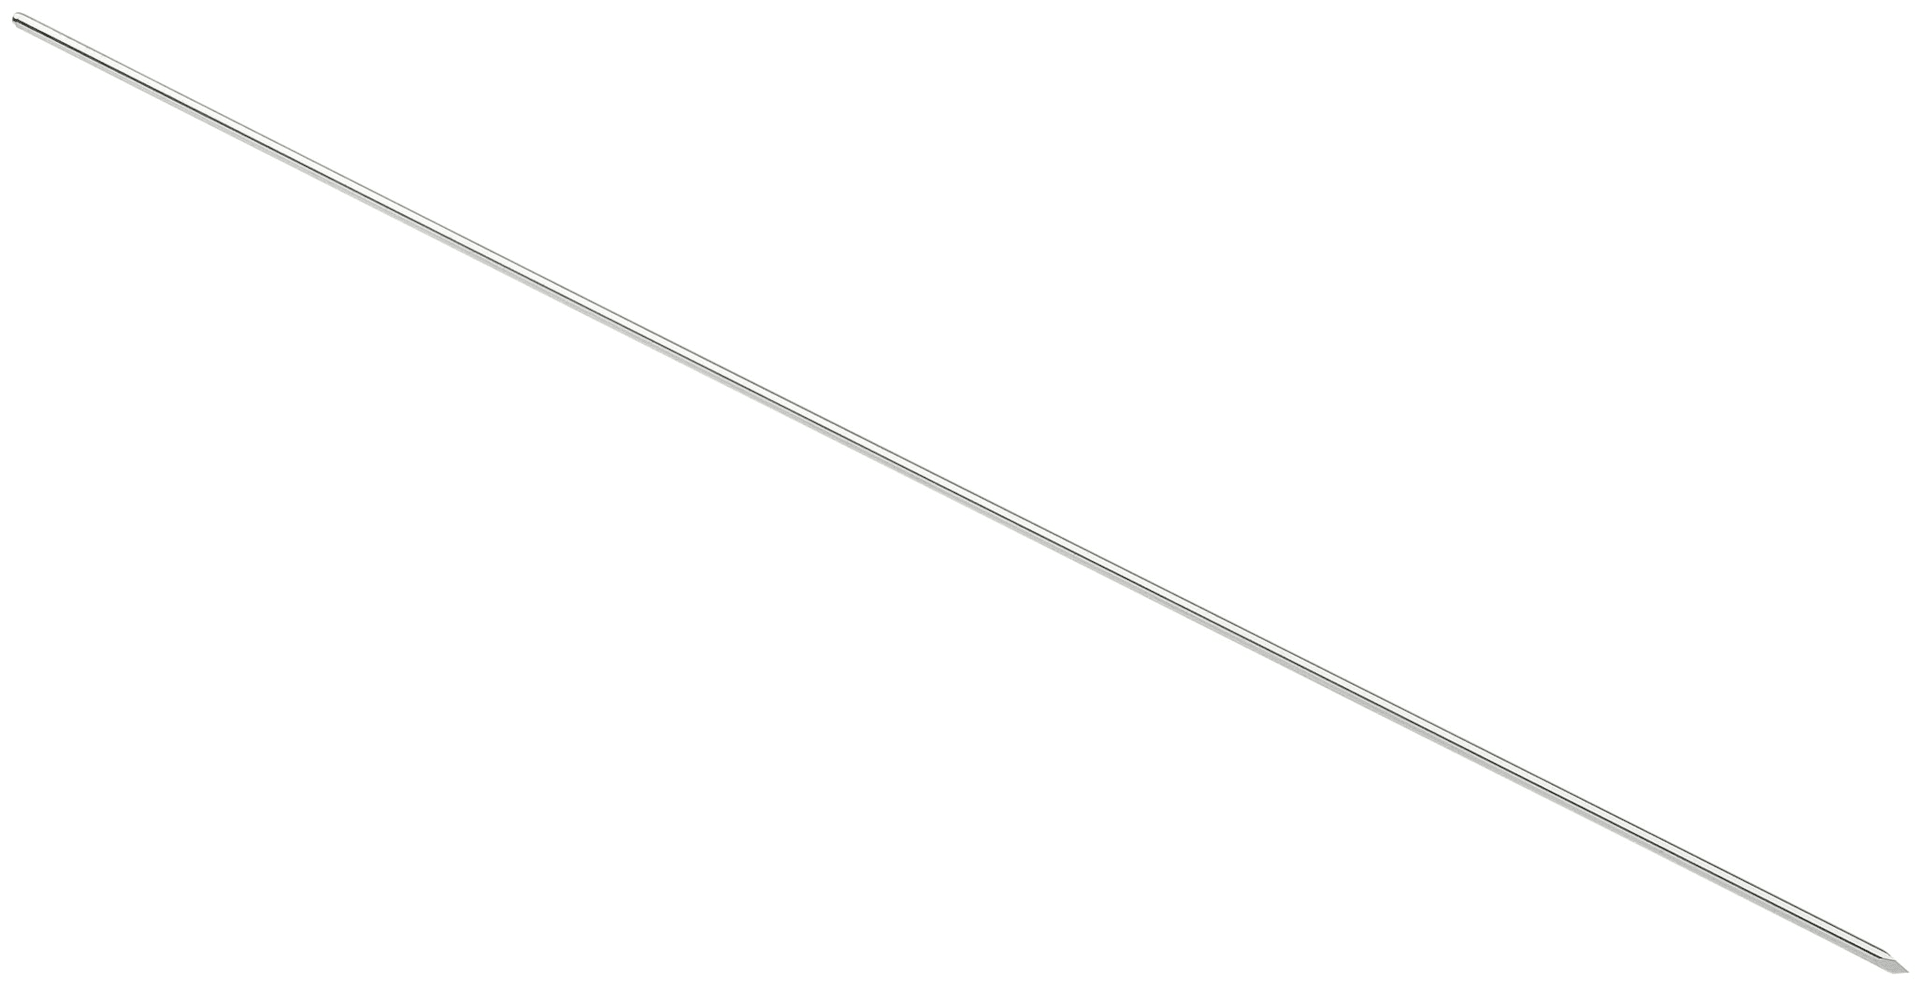 Zieldraht für Sprunggelenksarthroskopie, 1.6 mm